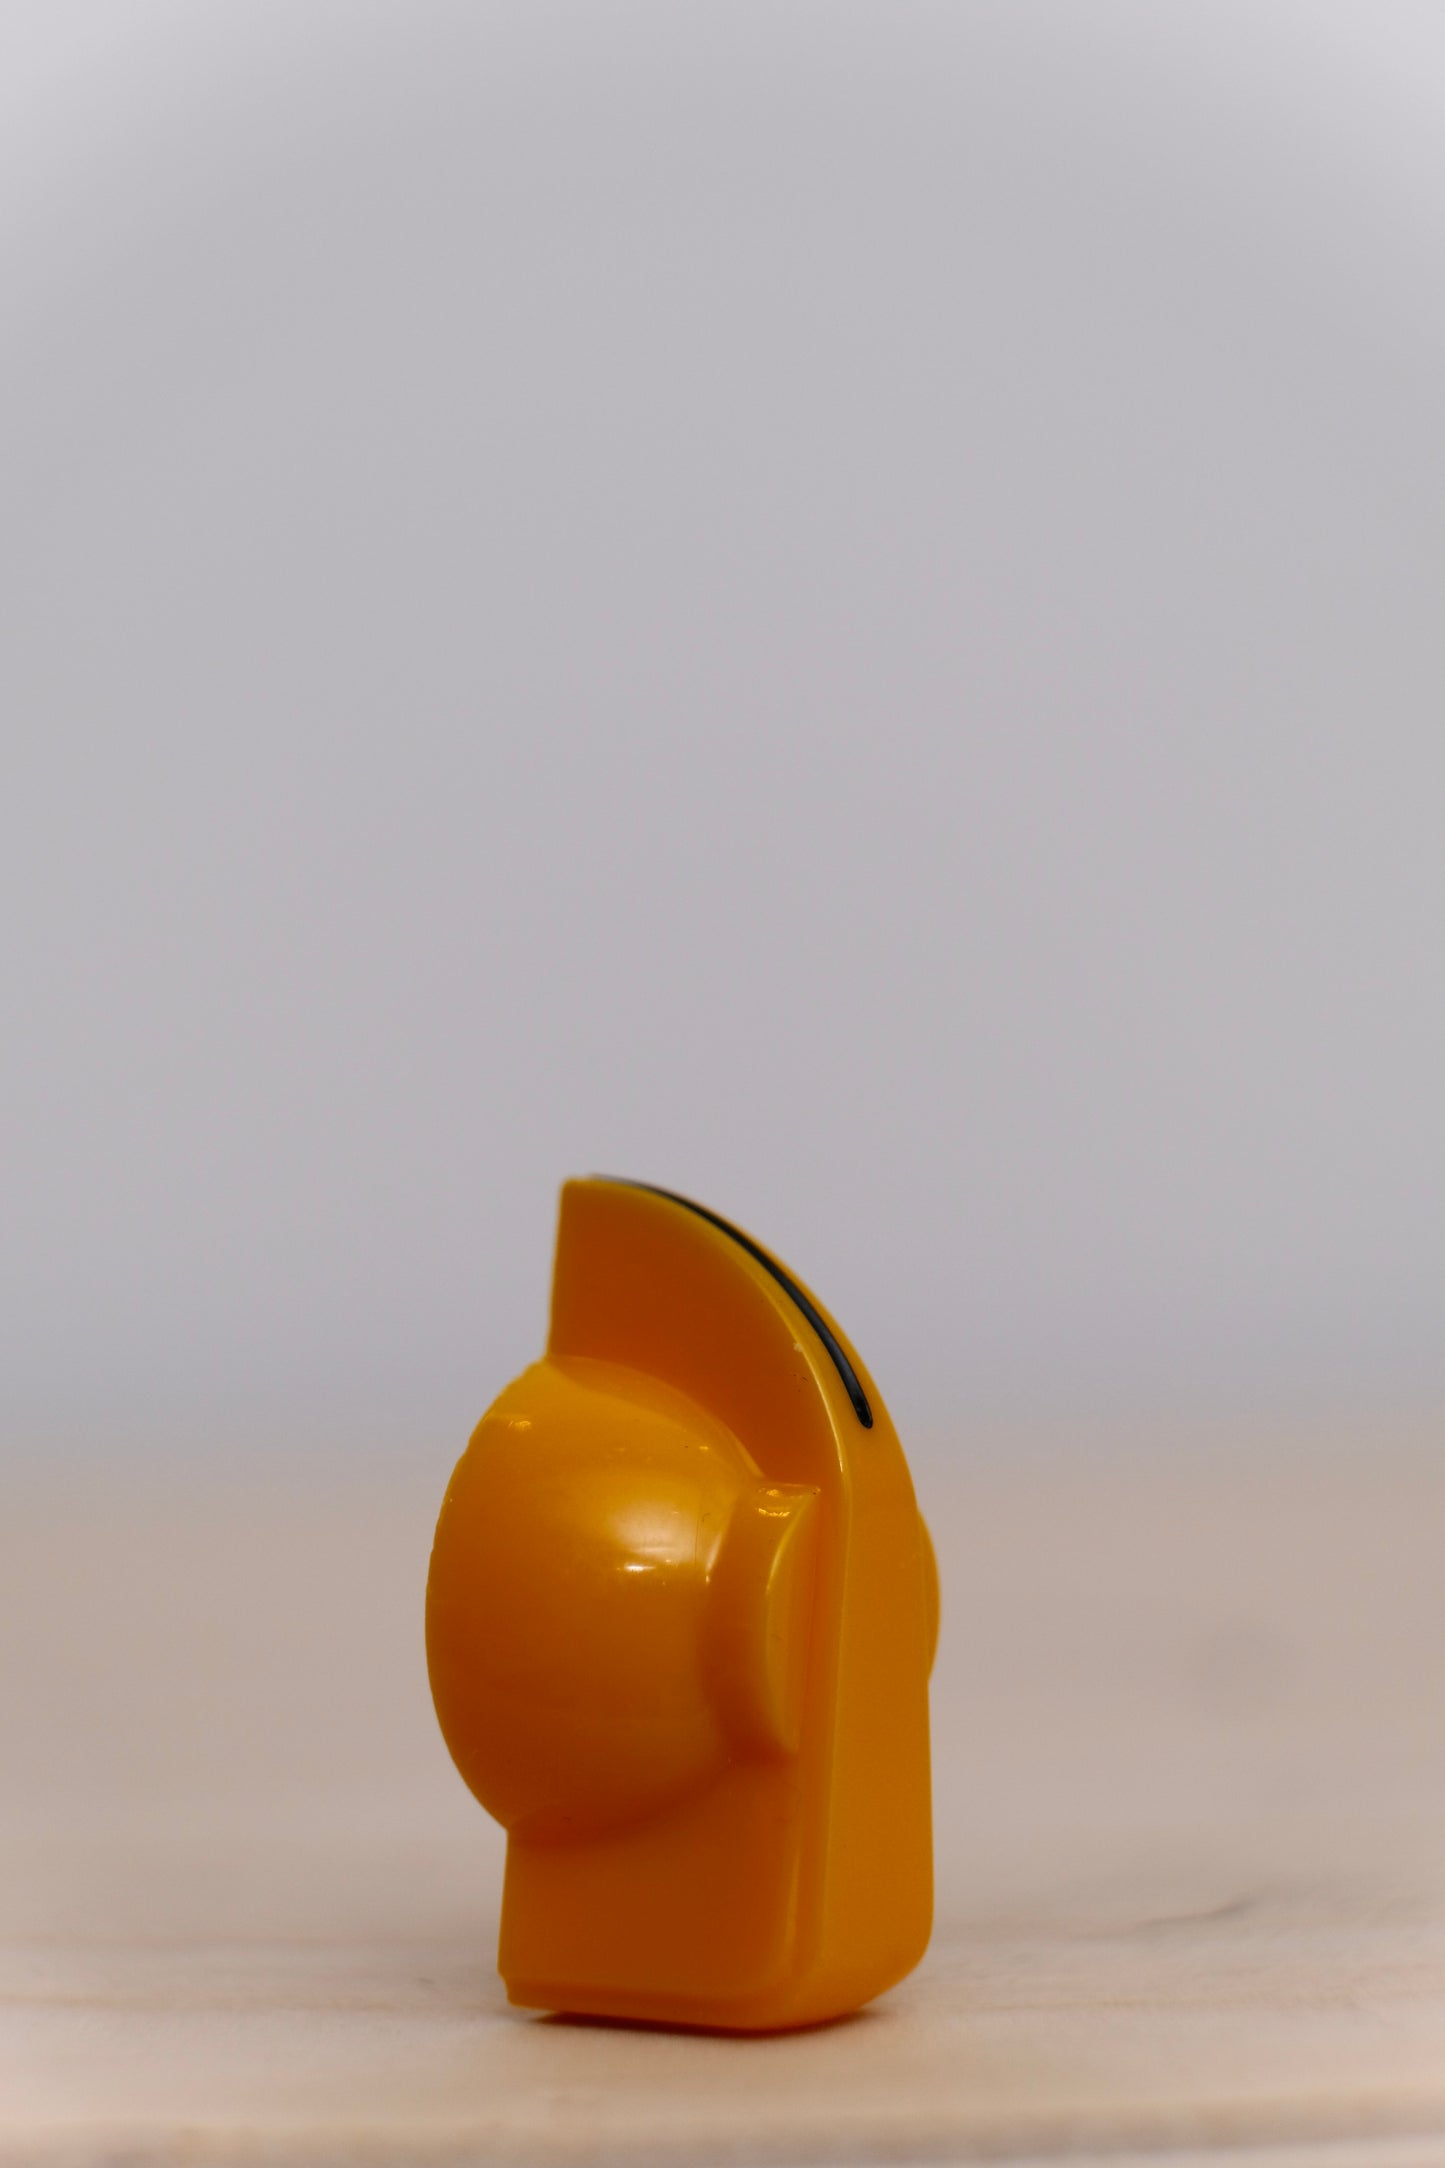 Yellow Chicken Head Knob with Brass Insert